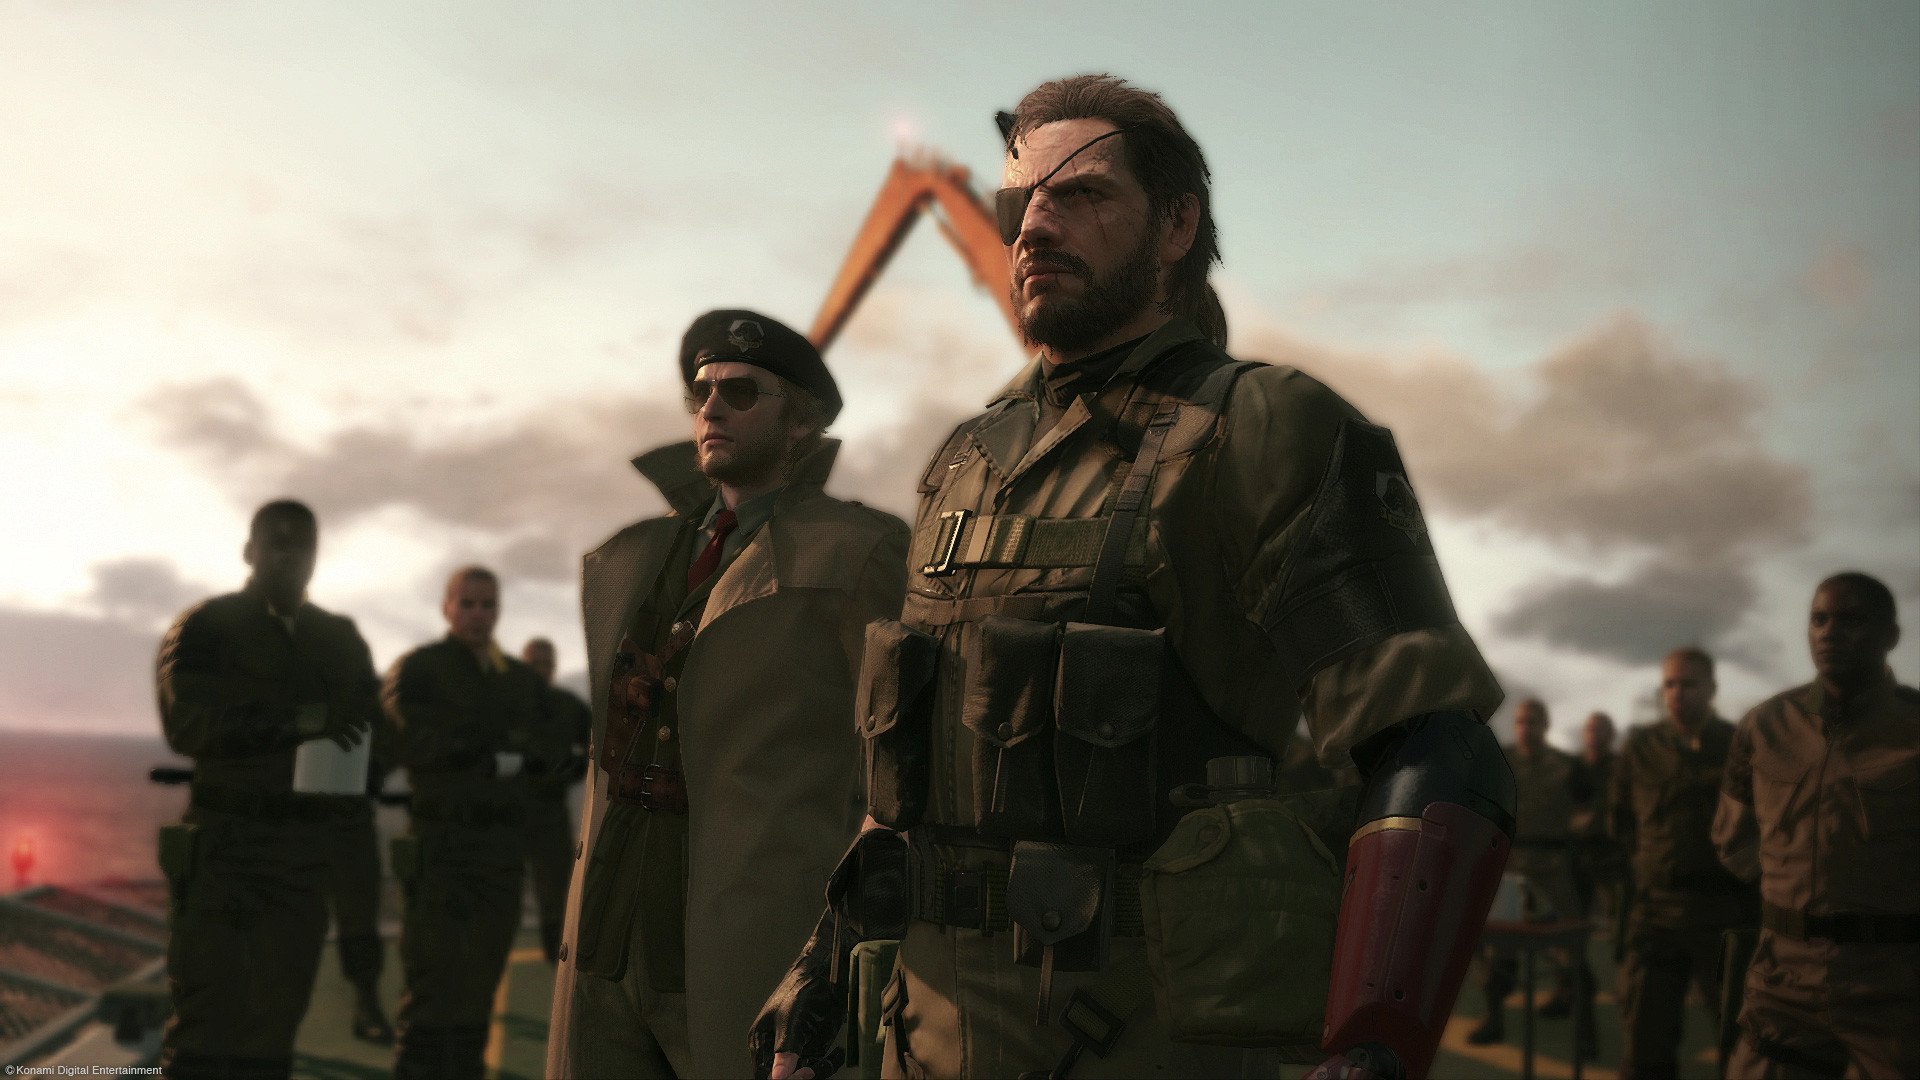 Metal Gear Solid V: The Phantom Pain mgs 5 best games 2015 disgusting men отвратительные мужики лучшие игры 2015 года